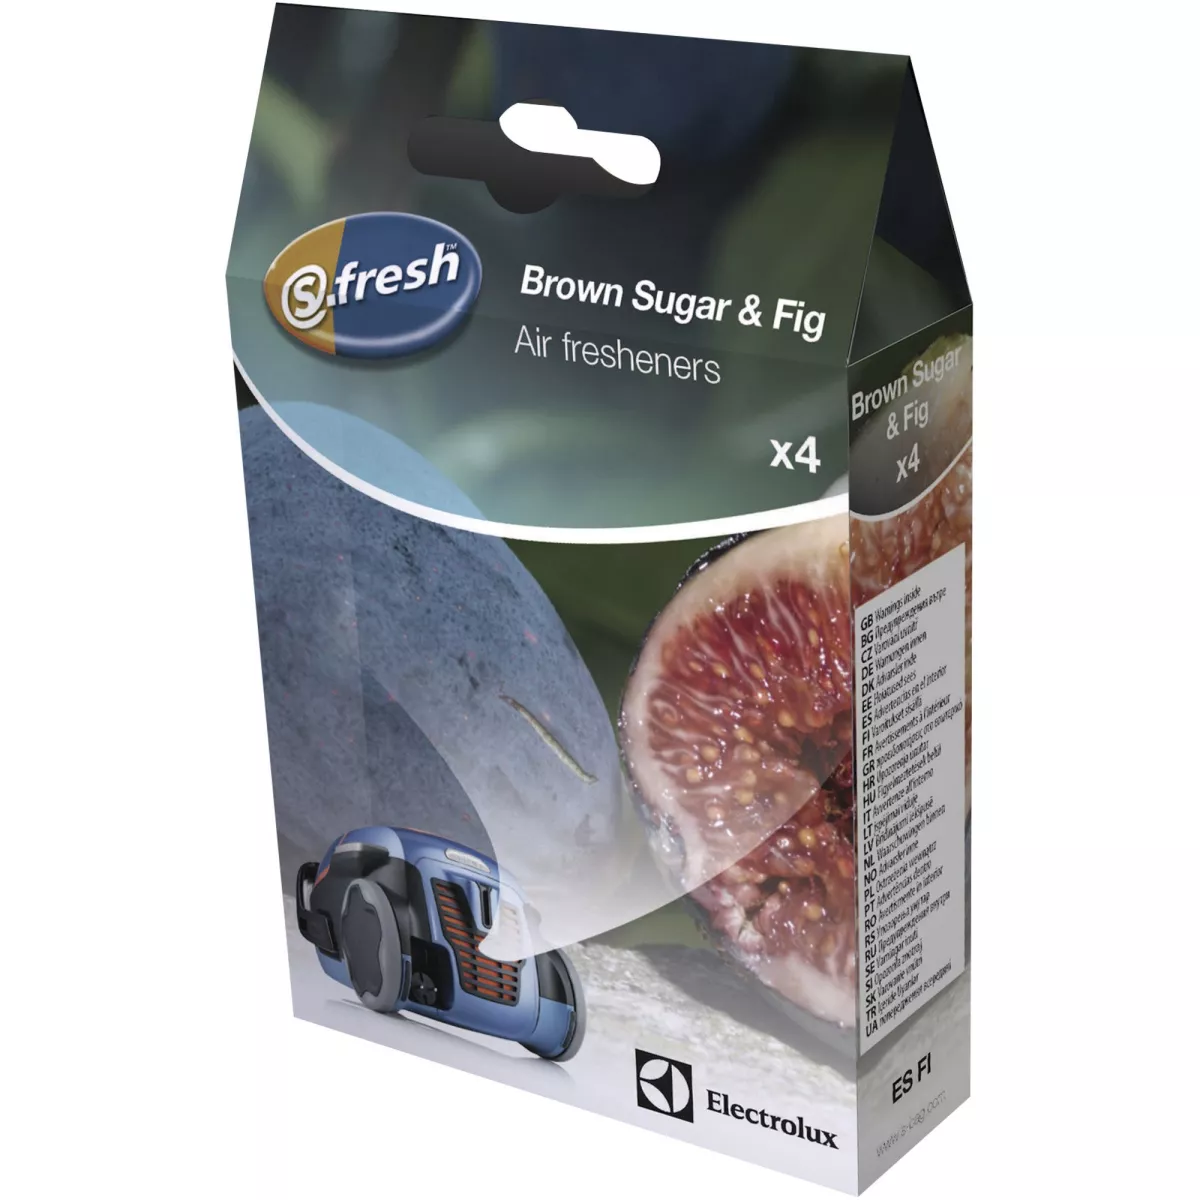 #1 - Electrolux S-fresh Brown sugar & Fig luftfrisker til støvsuger